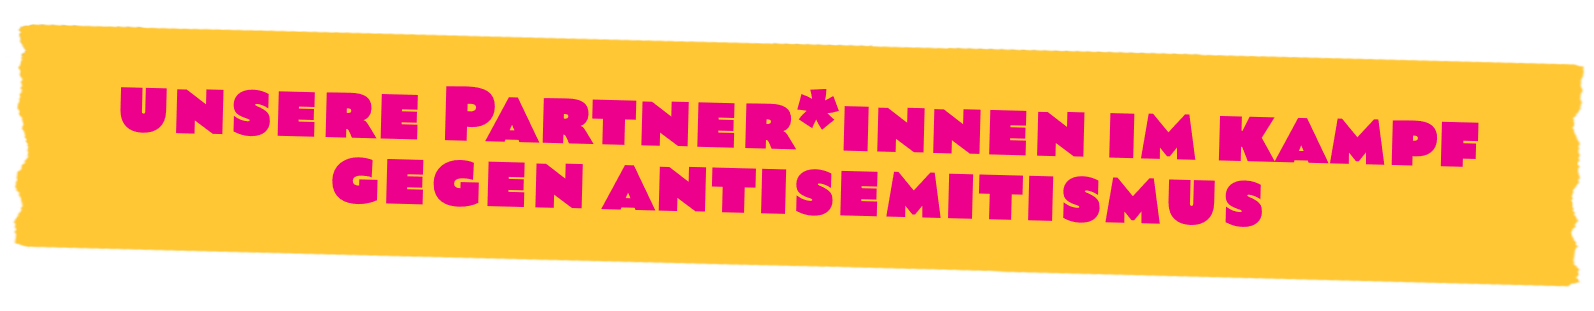 Unsere Partner:innen im Kampf gegen Antisemitismus